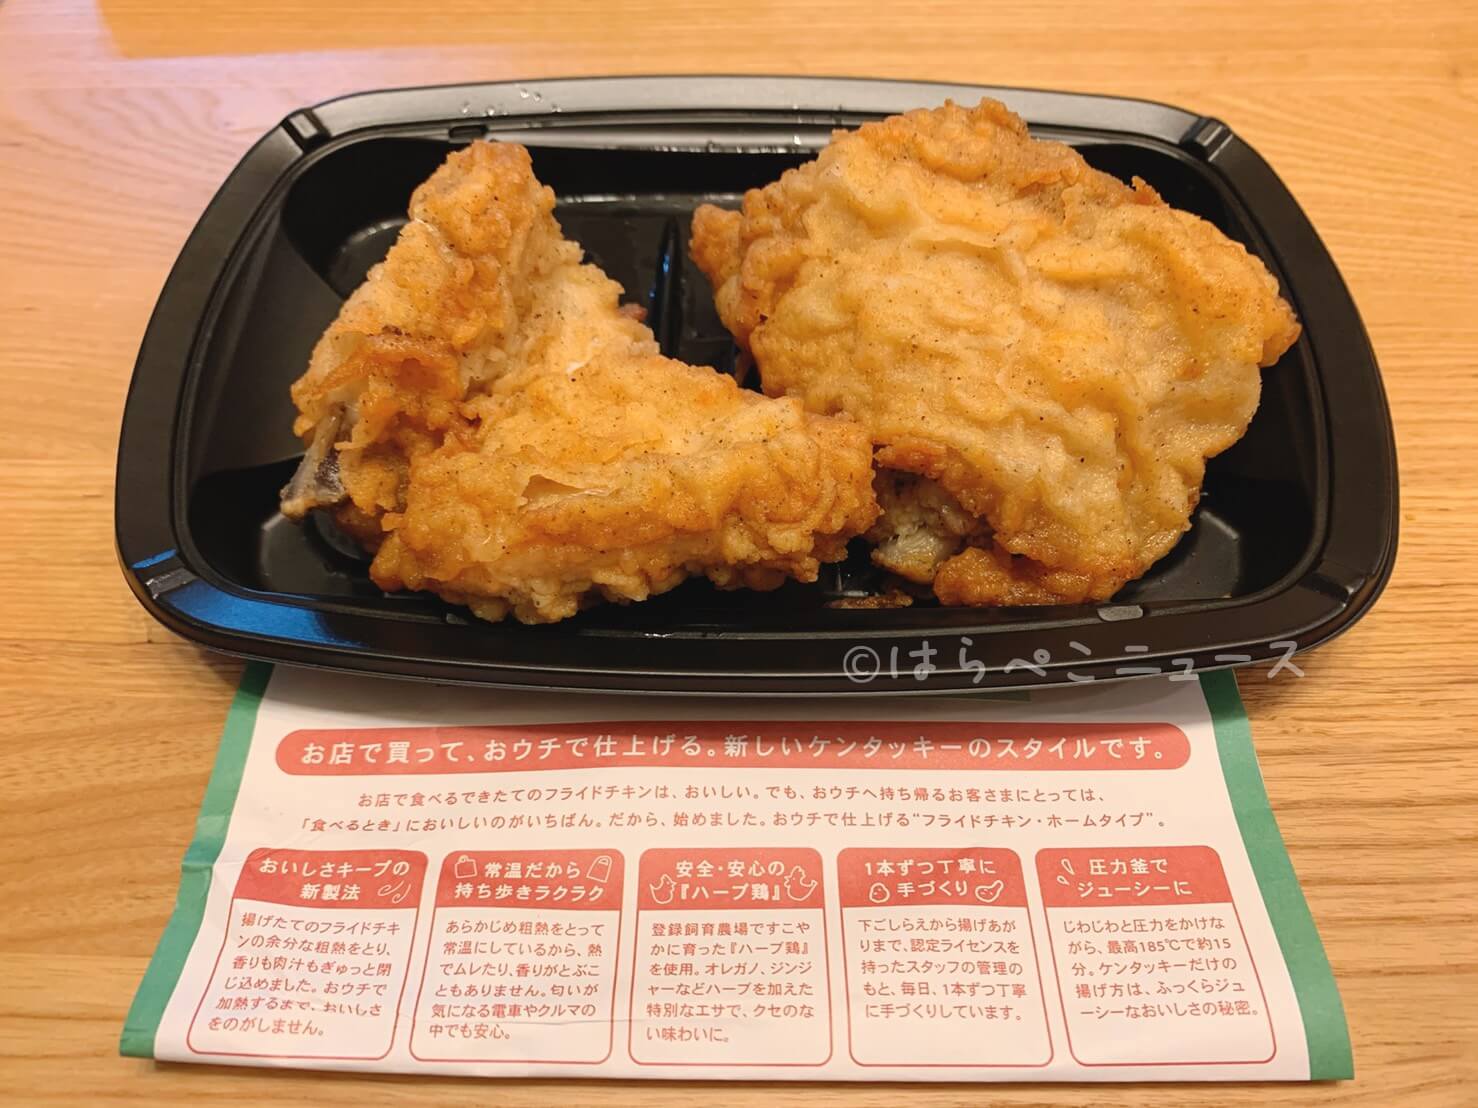 【実食レポ】『KFCステーション』レンジでチンする専用チキン！持ち帰り用「フライドチキン・ホームタイプ」